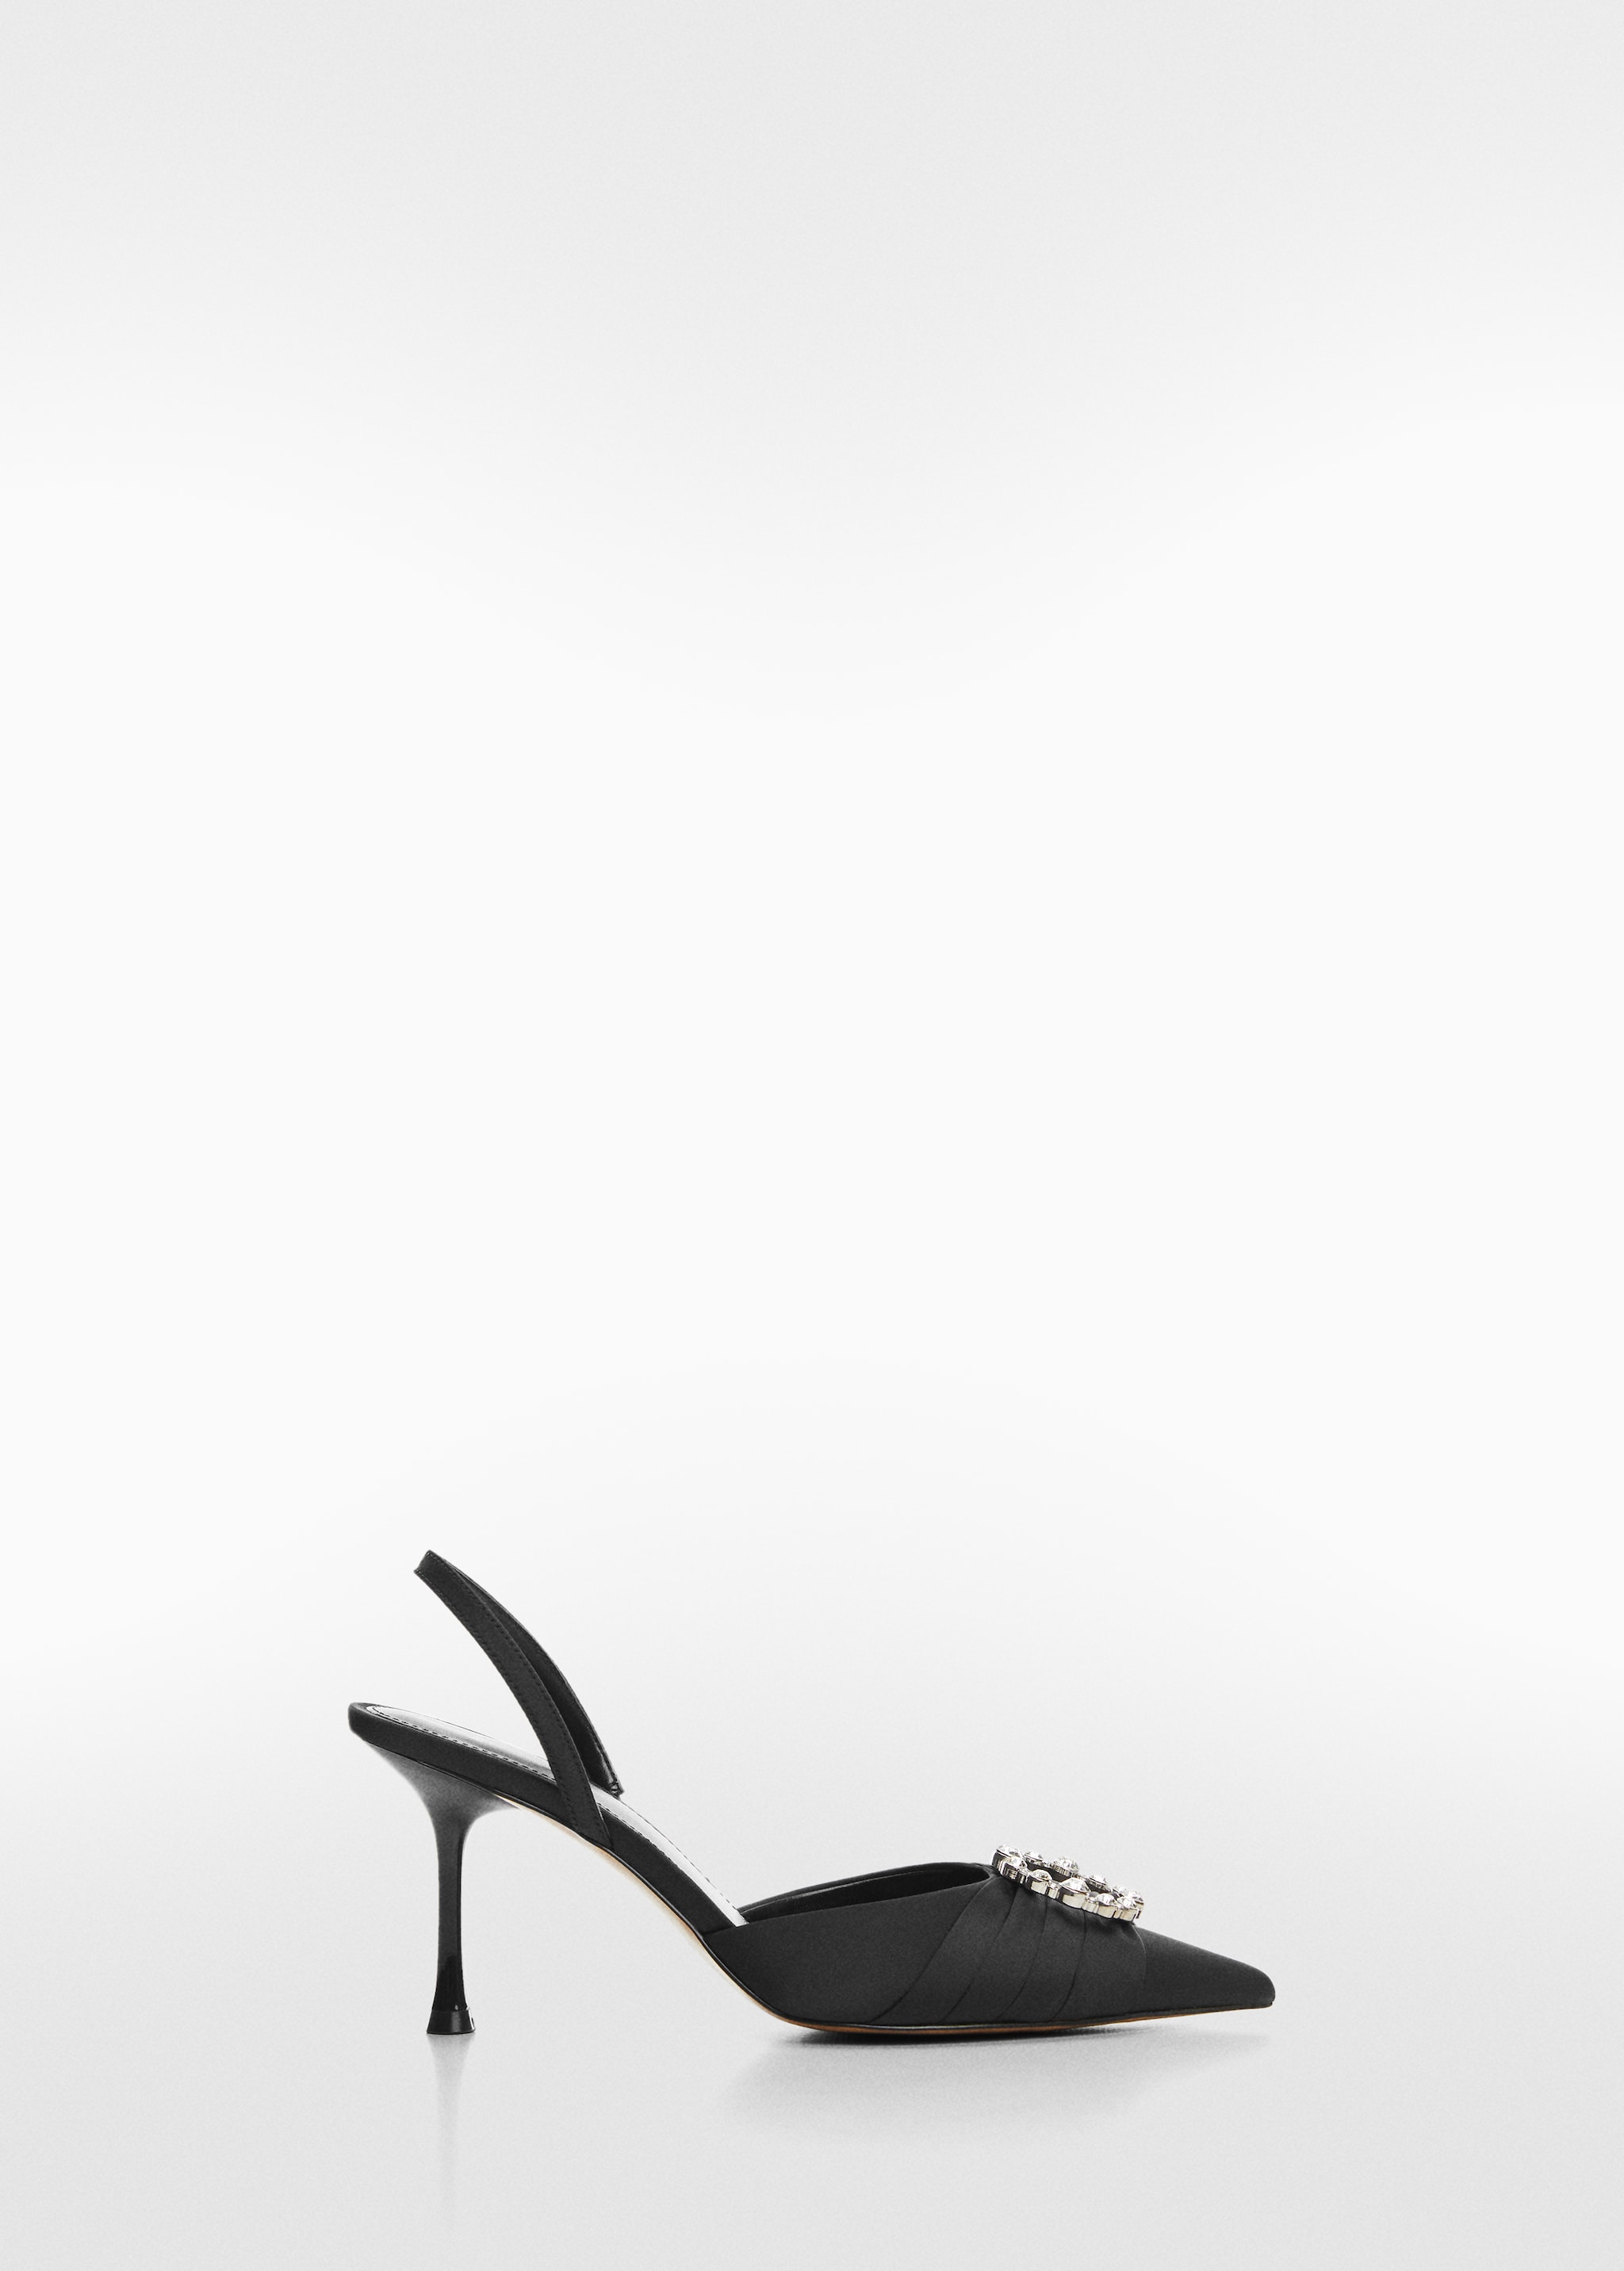 Zapato tacón joya - Artículo sin modelo